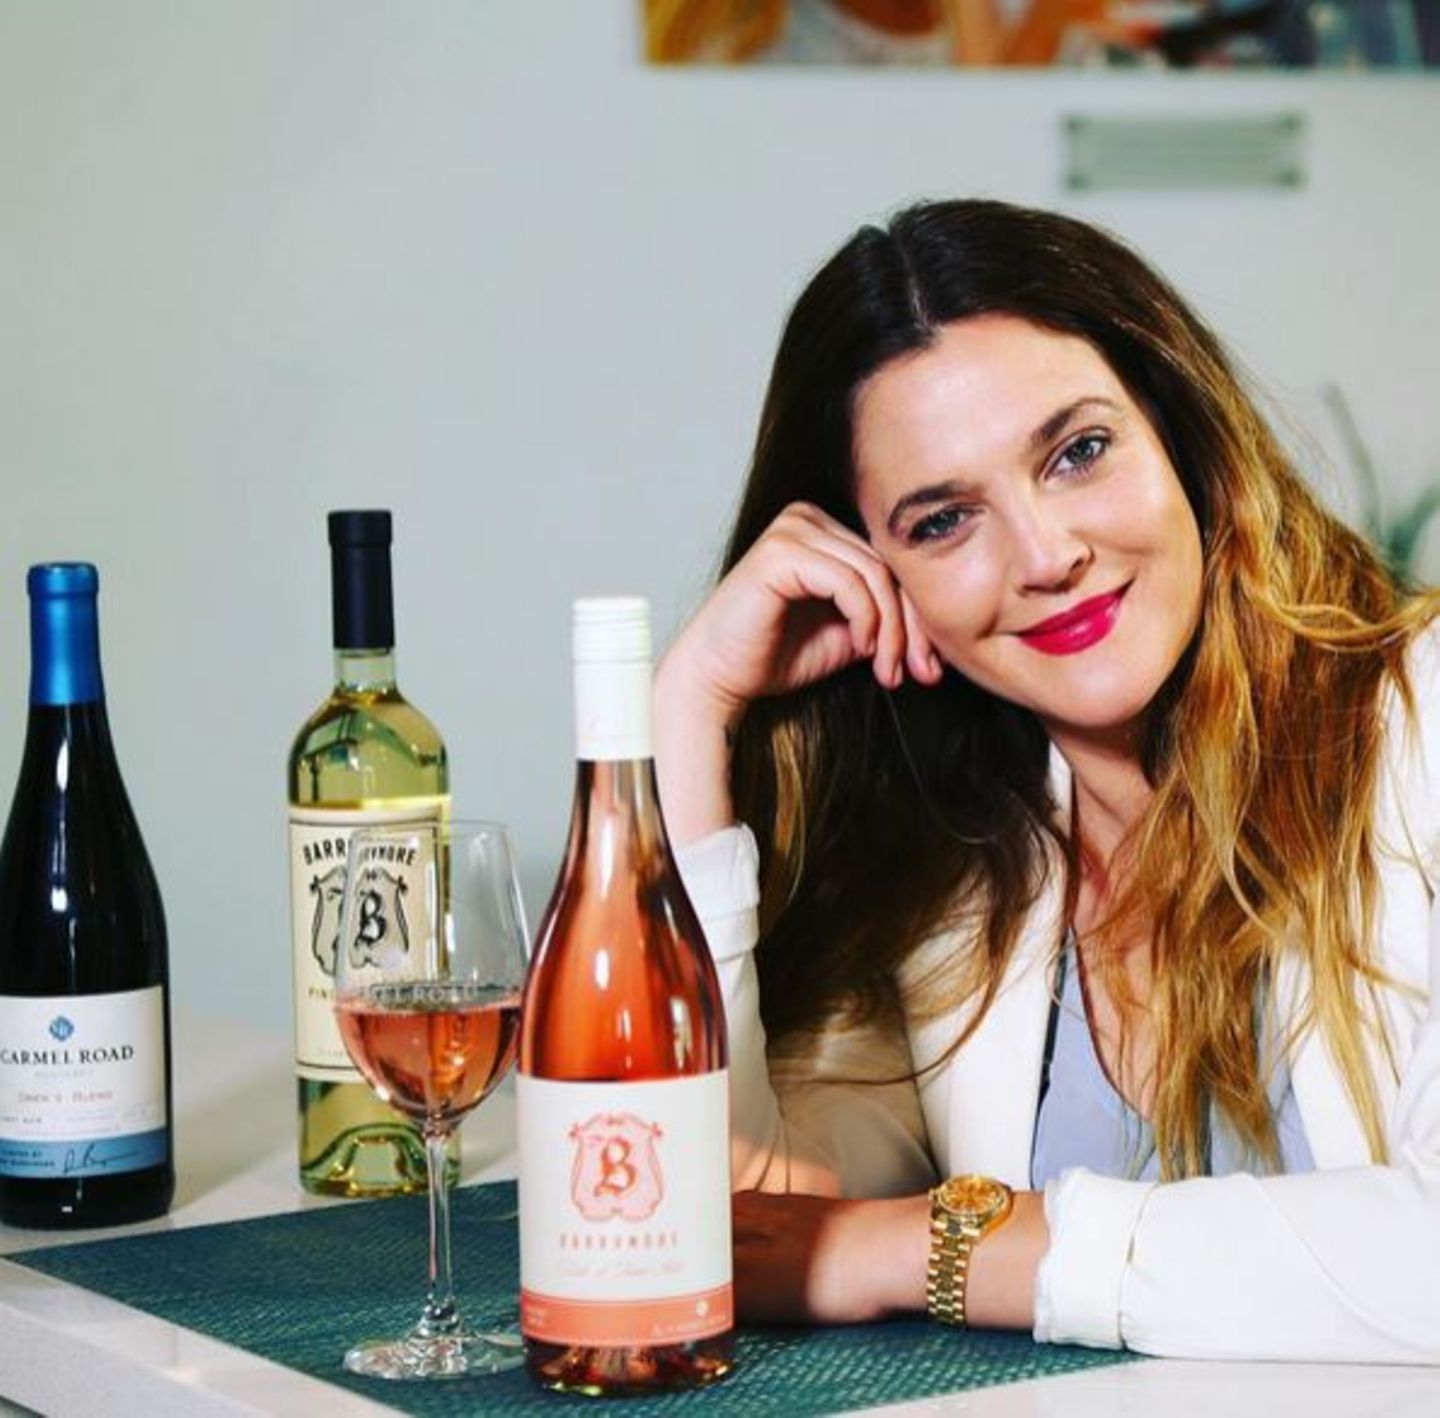 Drew Barrymore ist eine wahre Weinkennerin und Freundin des edlen Tropfens. Daher ist sie auch unter die Weinhändler gegangen und kreiert und verkauft ihre eigenen Sorten.